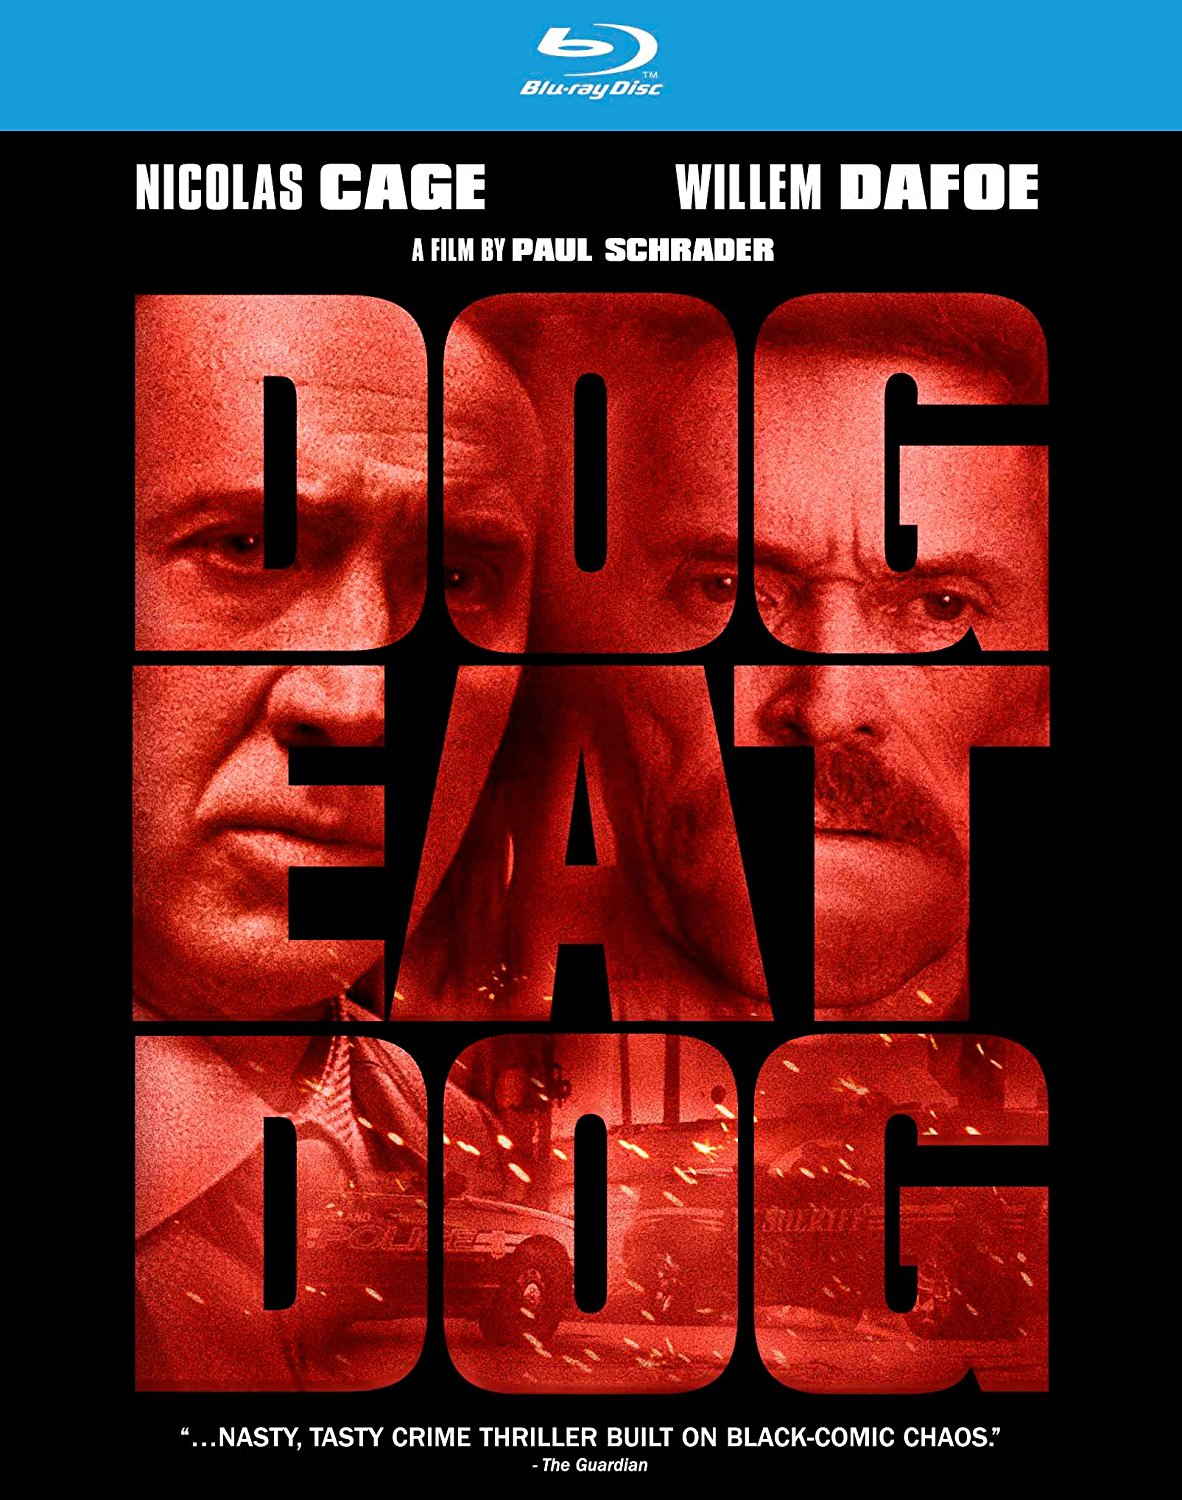 Dog Eat Dog (2016) Blu-ray Disc Cove Art